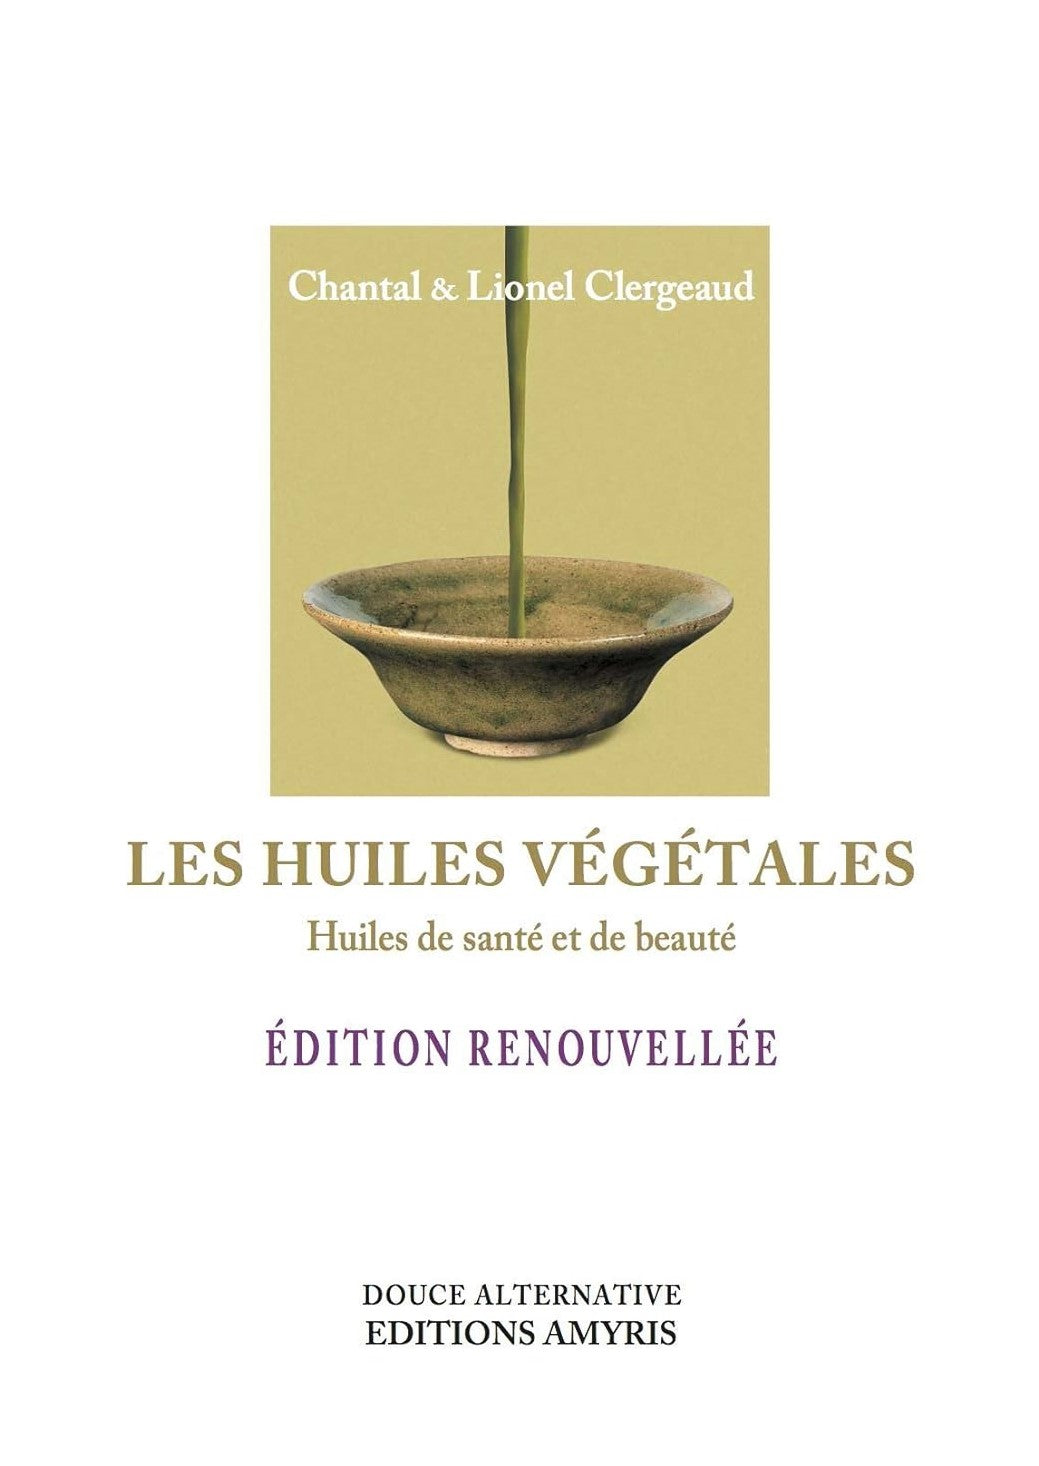 Les huiles végétales : Huiles de santé et de beauté - Chantal Clergeaud